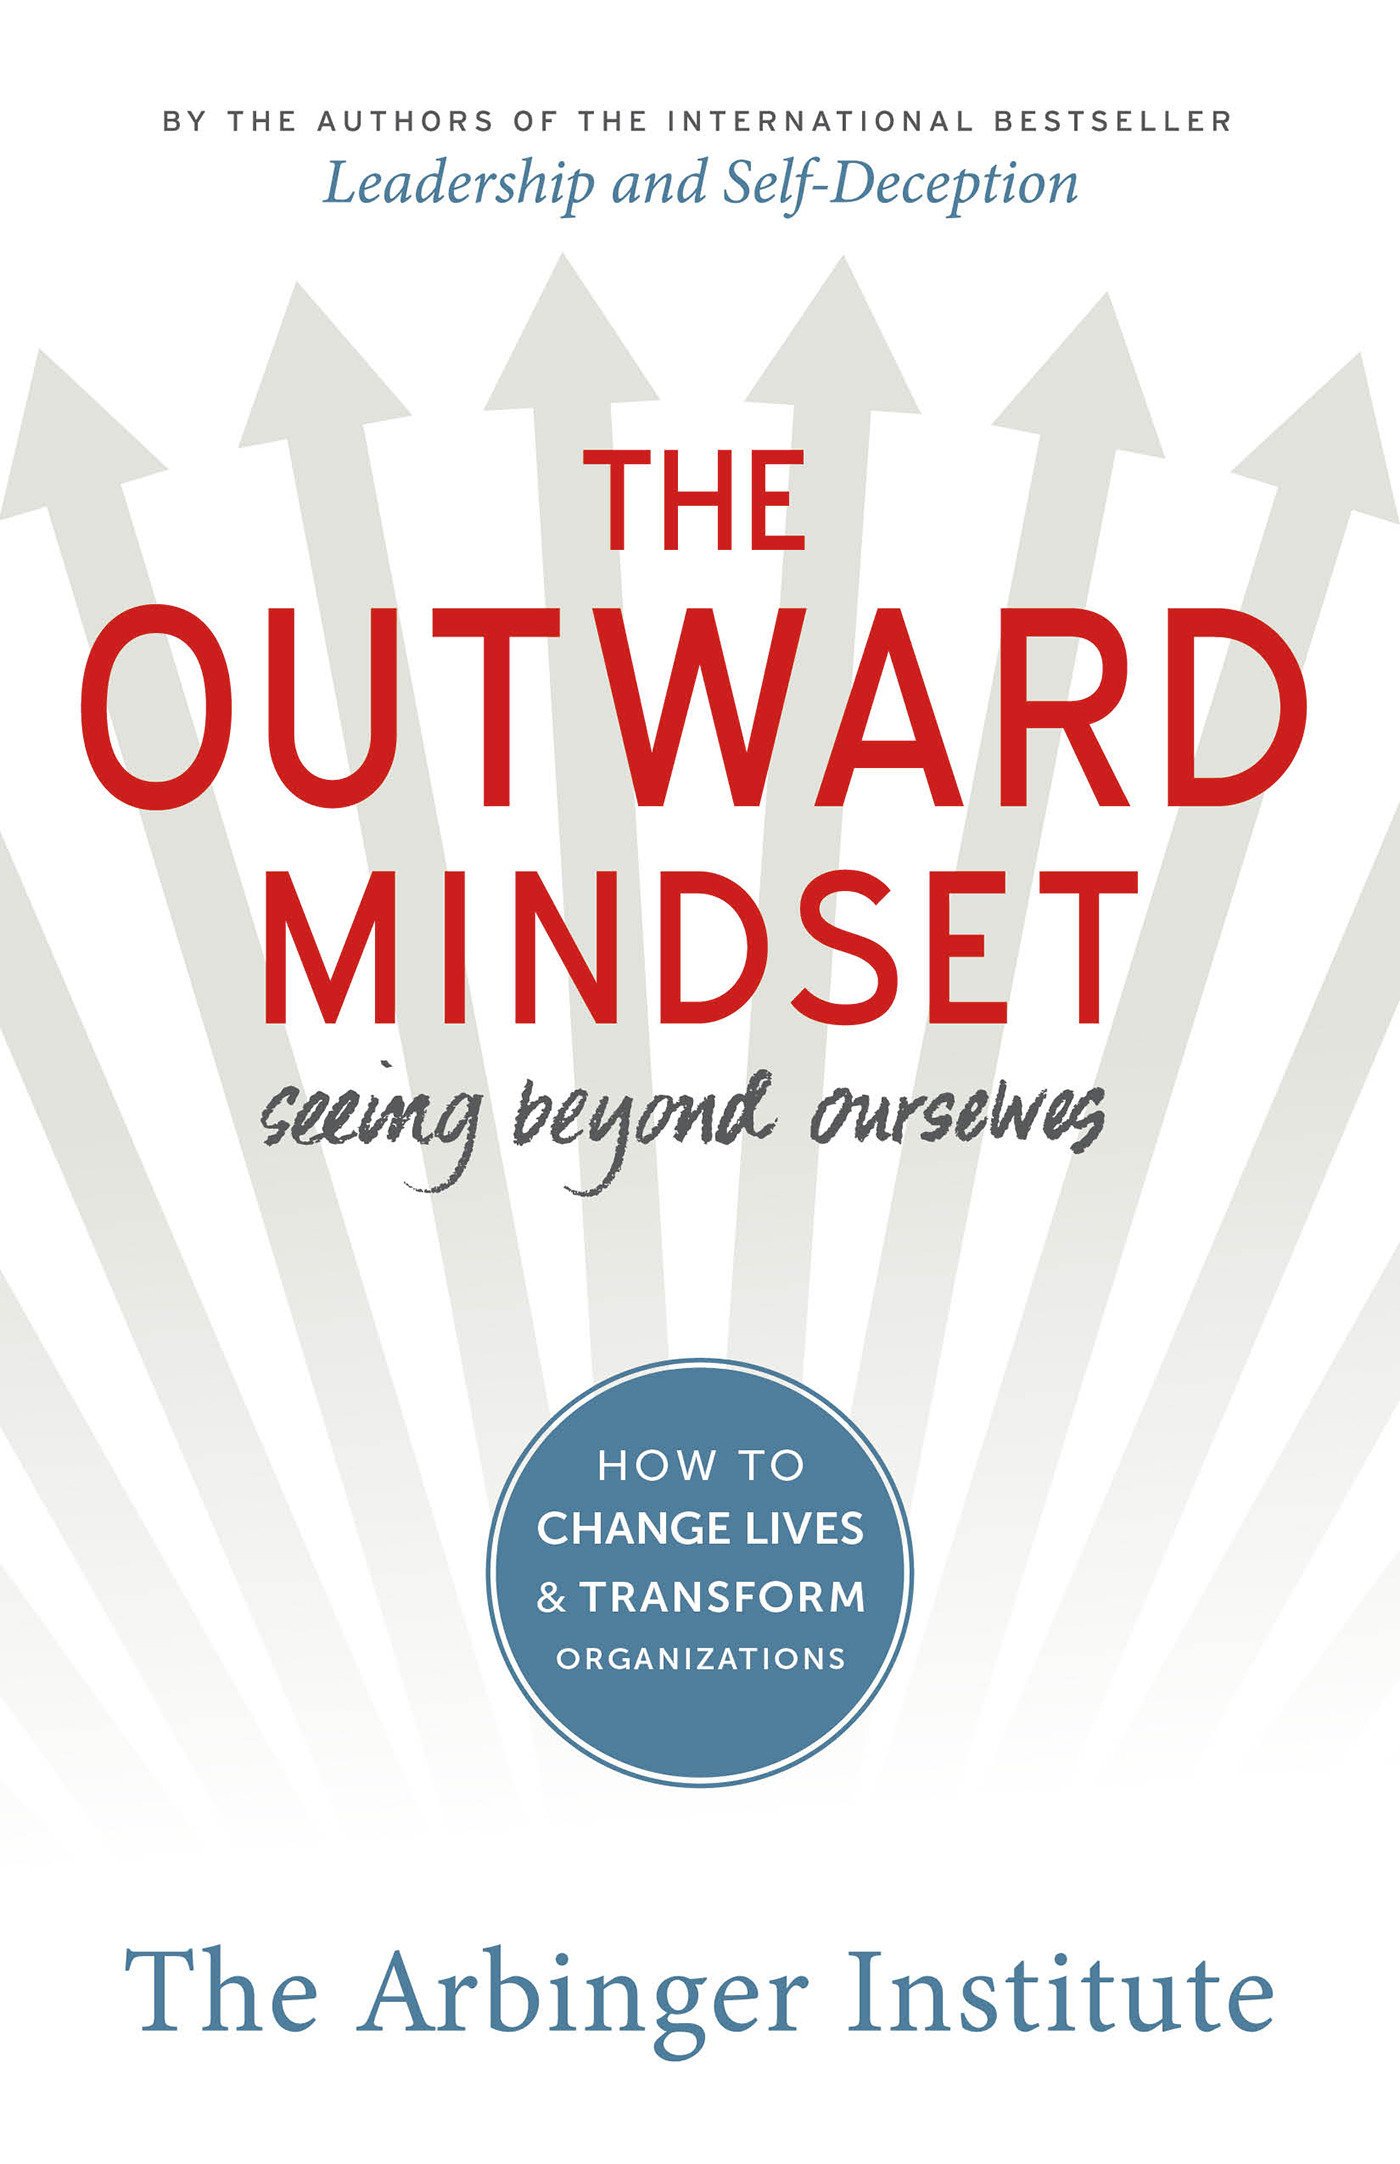 Arbinger Institute: The outward mindset (2016)